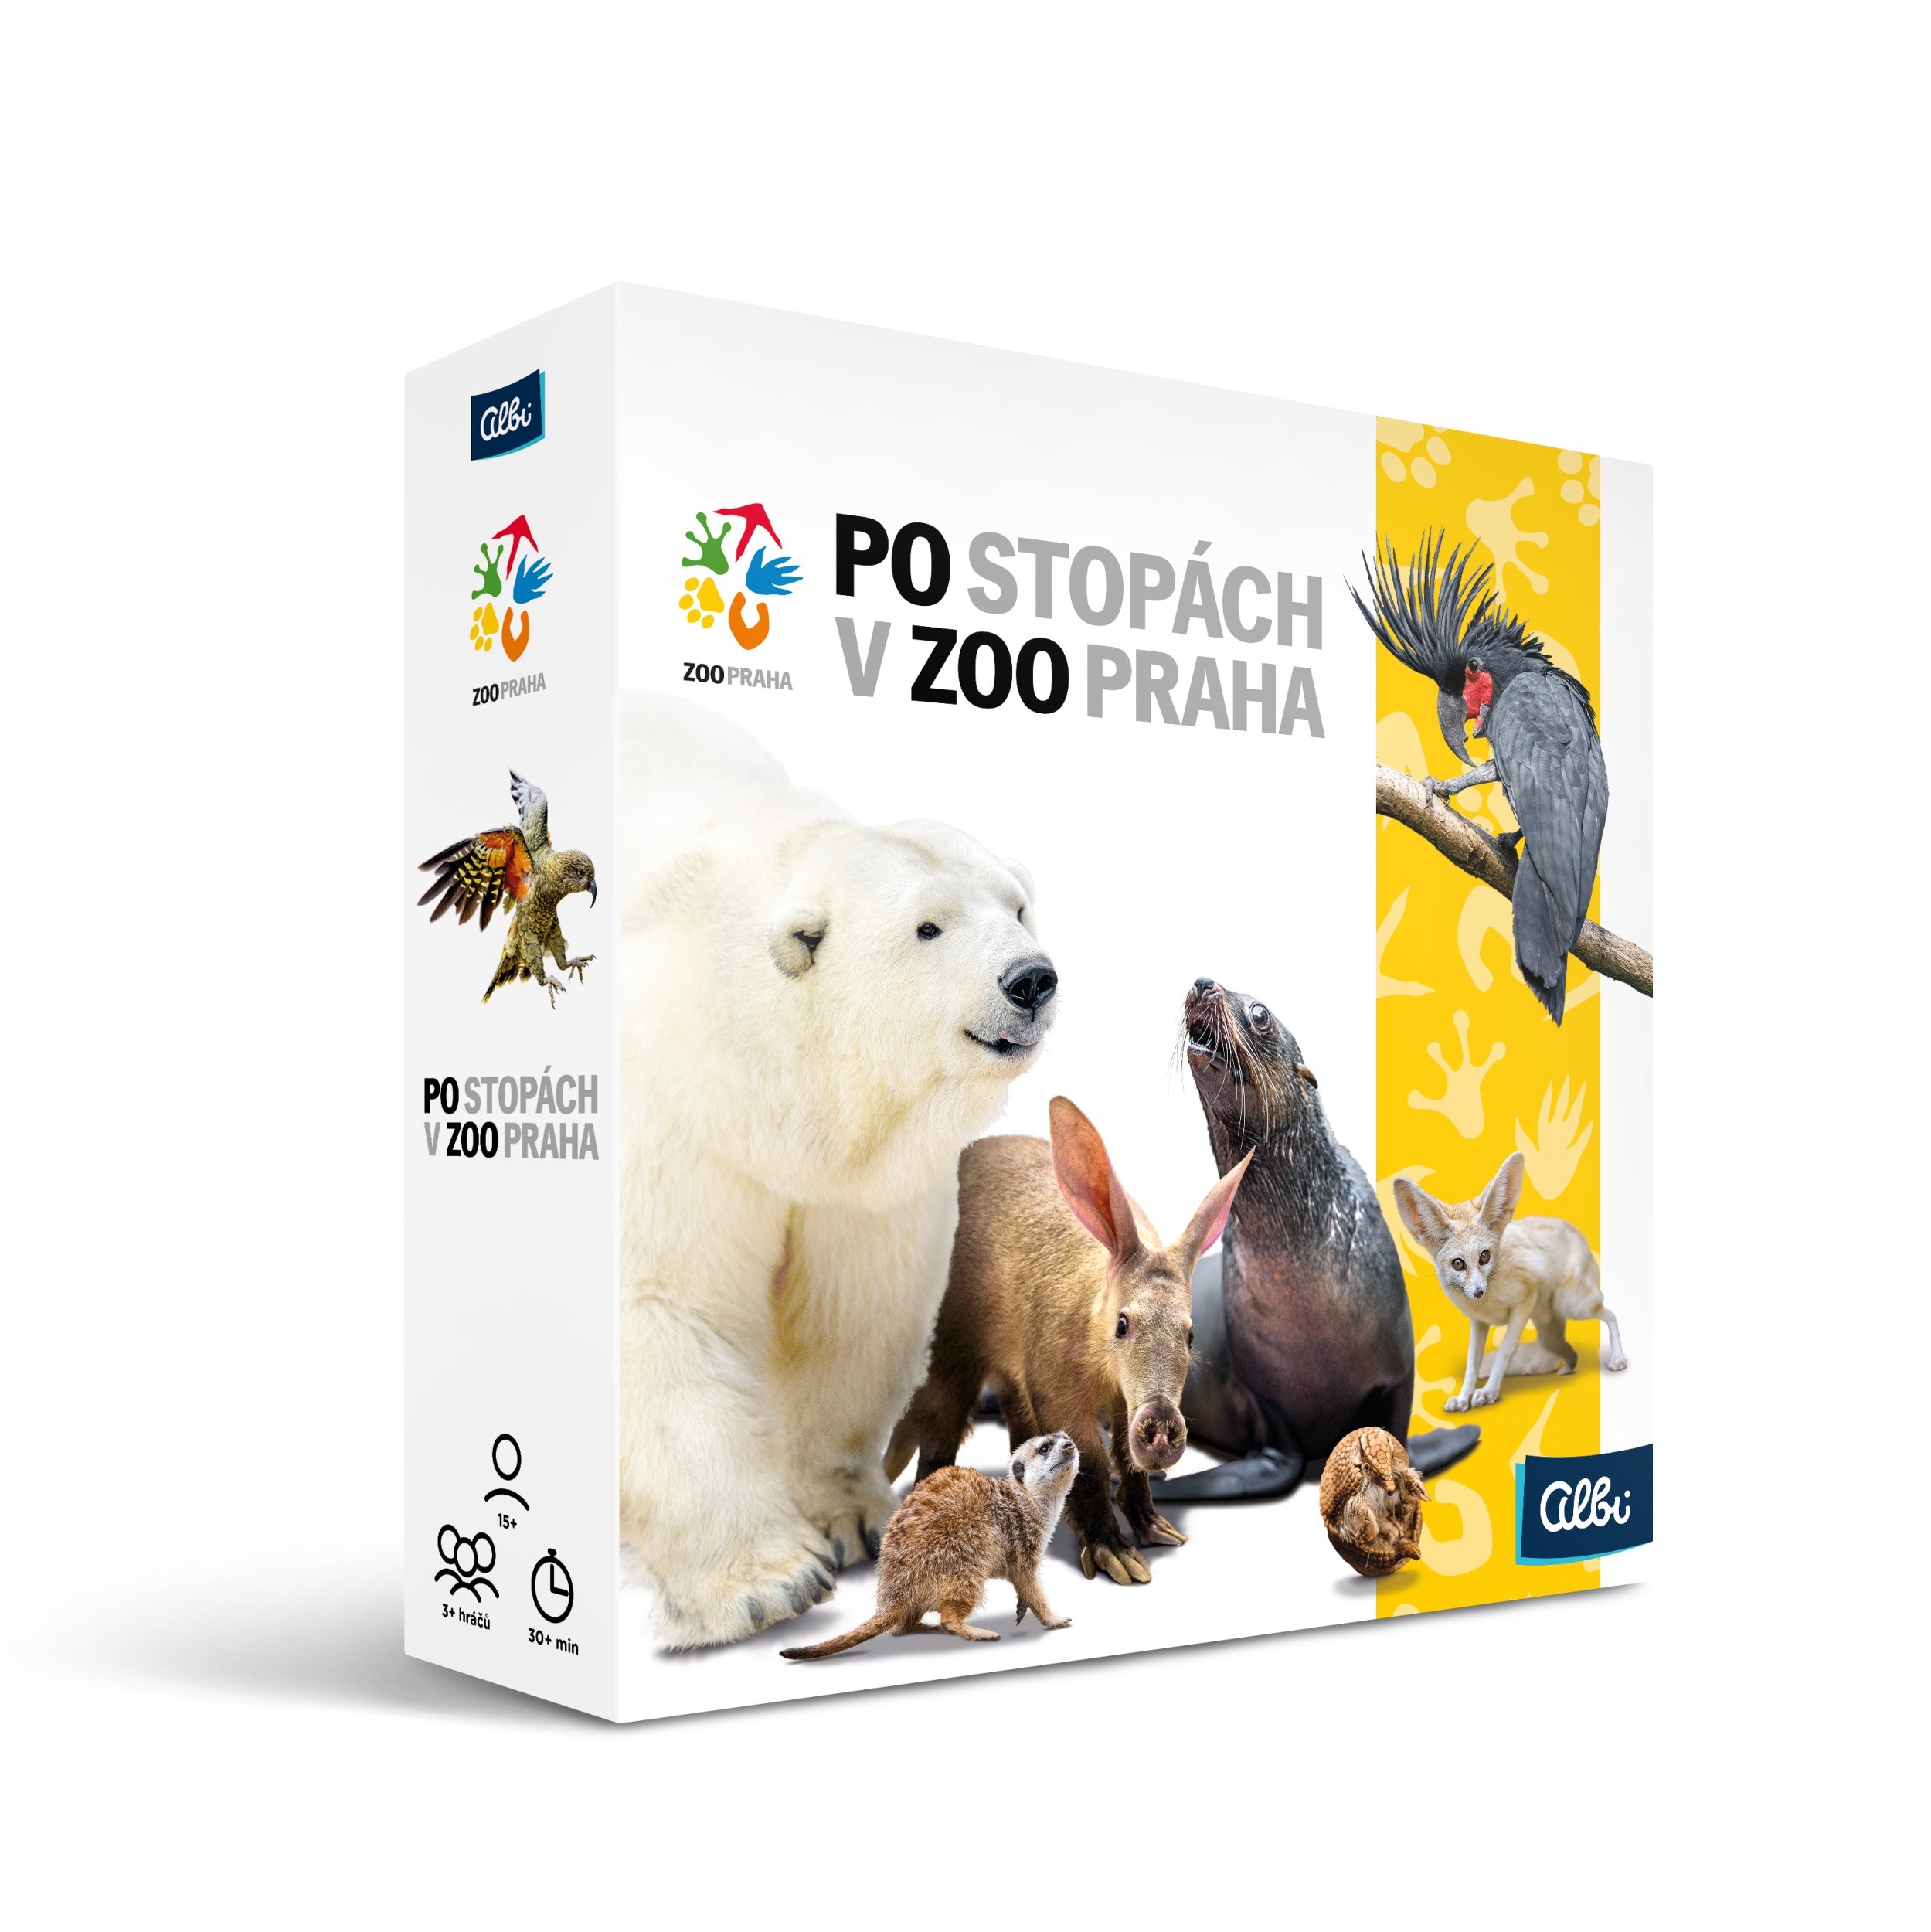 Po stopách v Zoo Praha